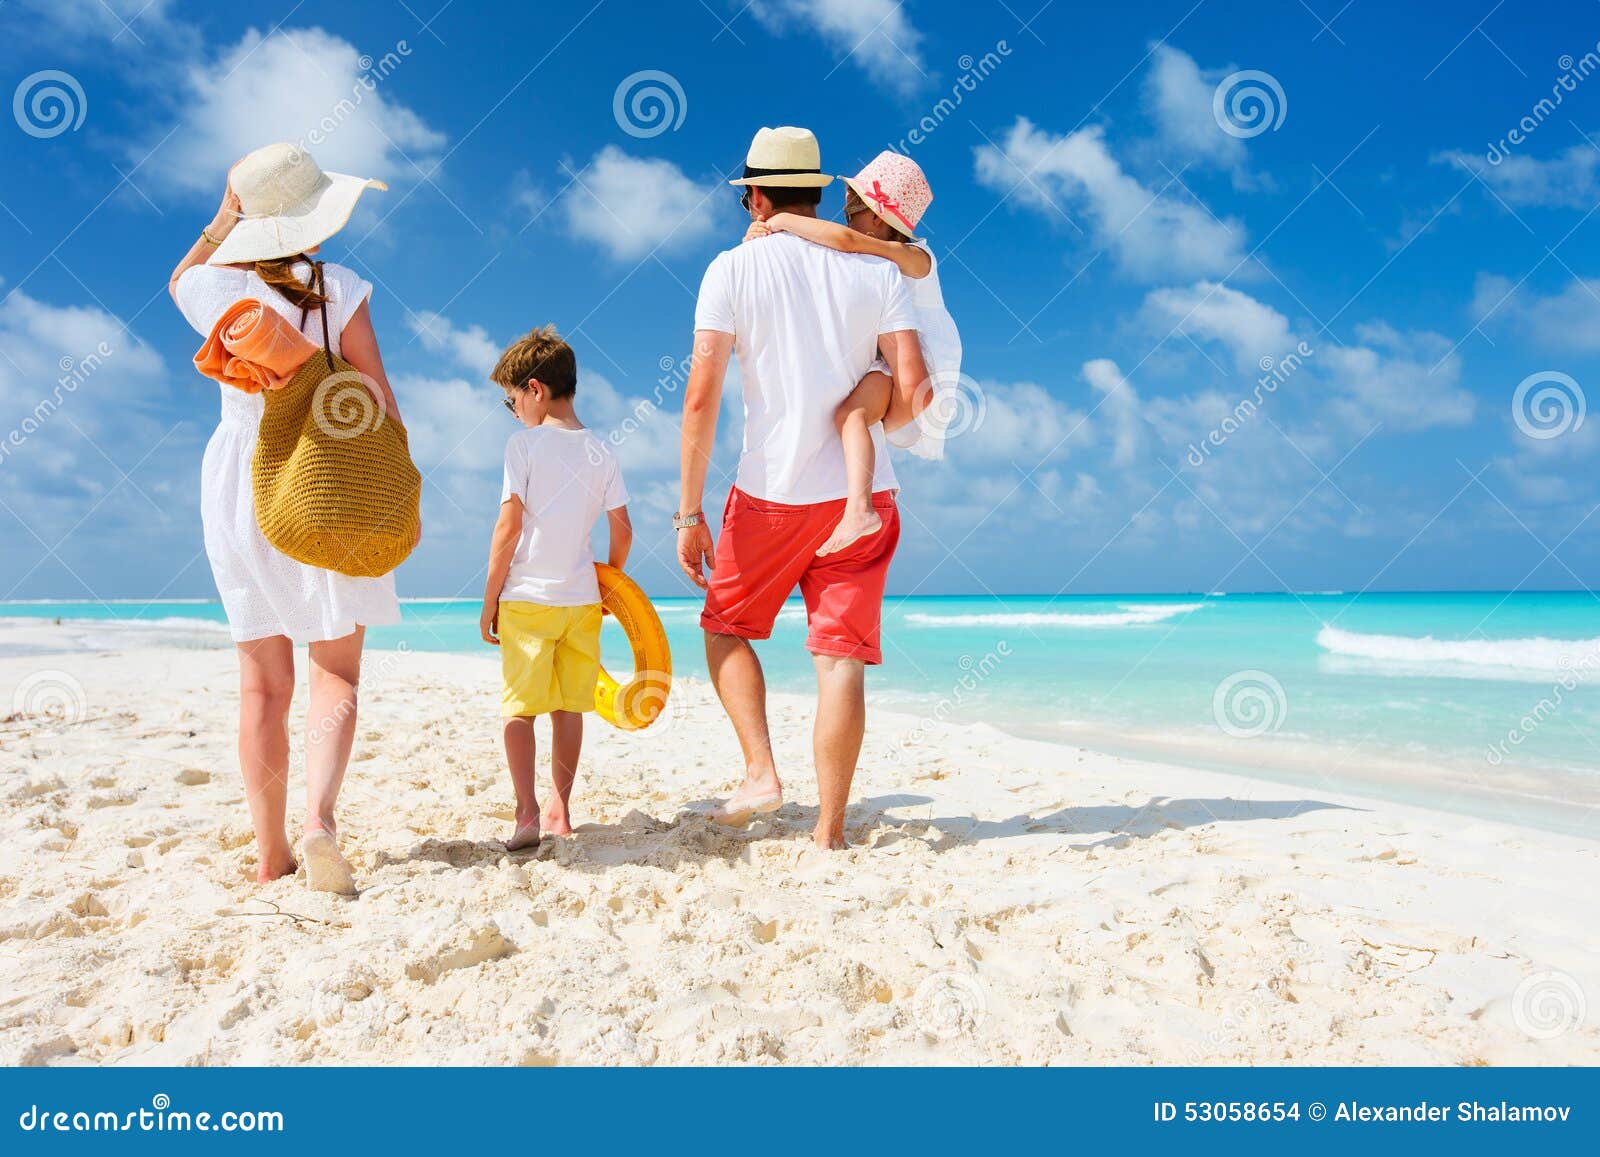 family beach vacation